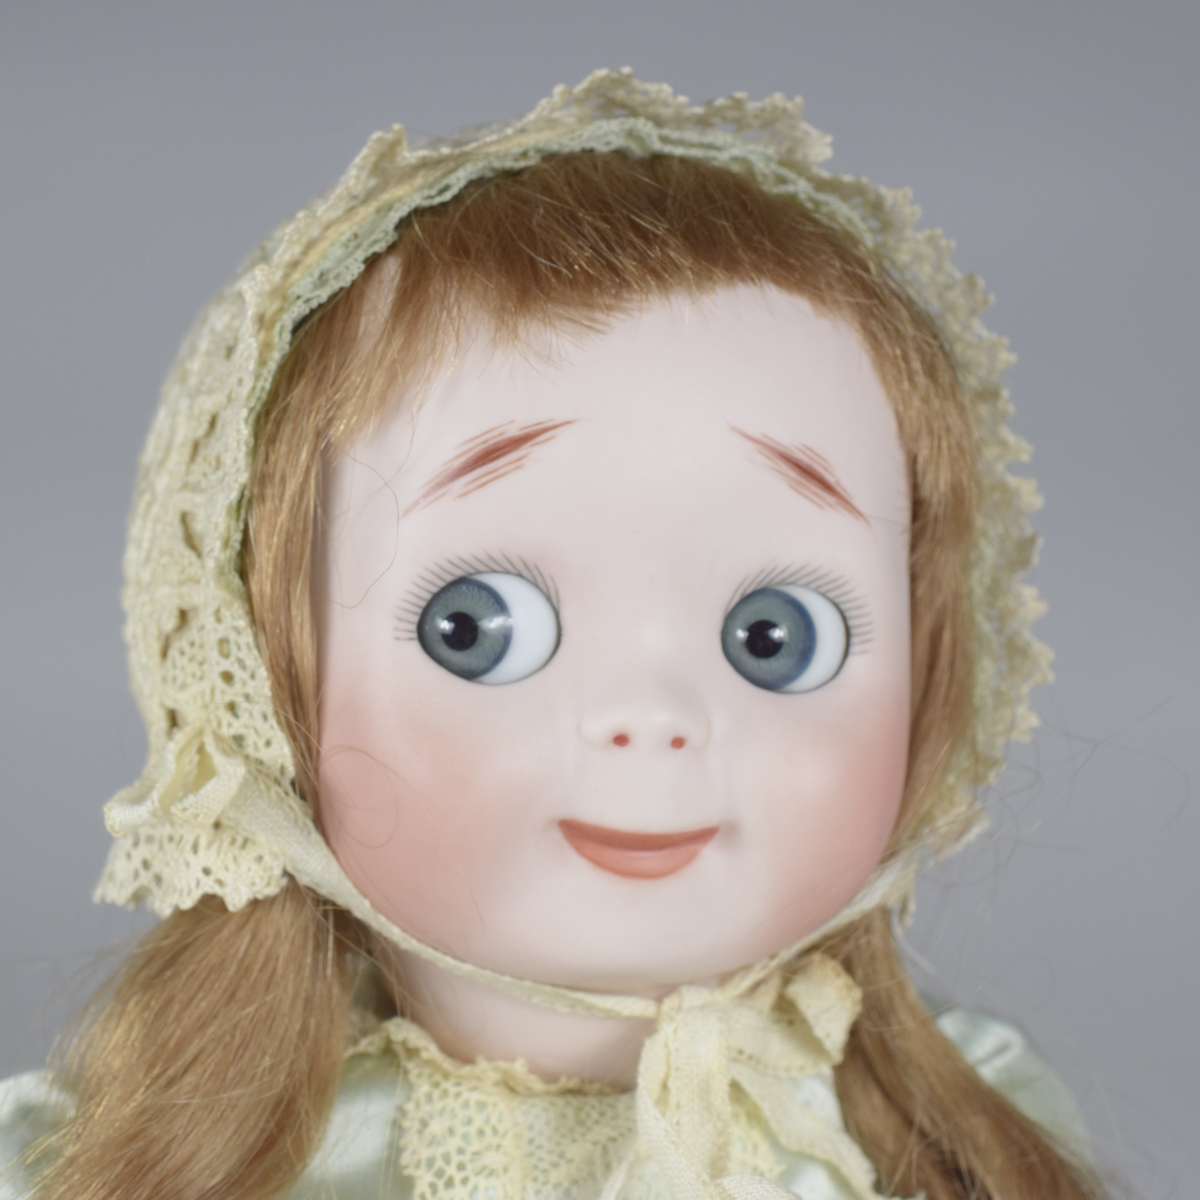 JDK Kestner 221 Porcelain Doll for Butler Brothers - Image 7 of 7